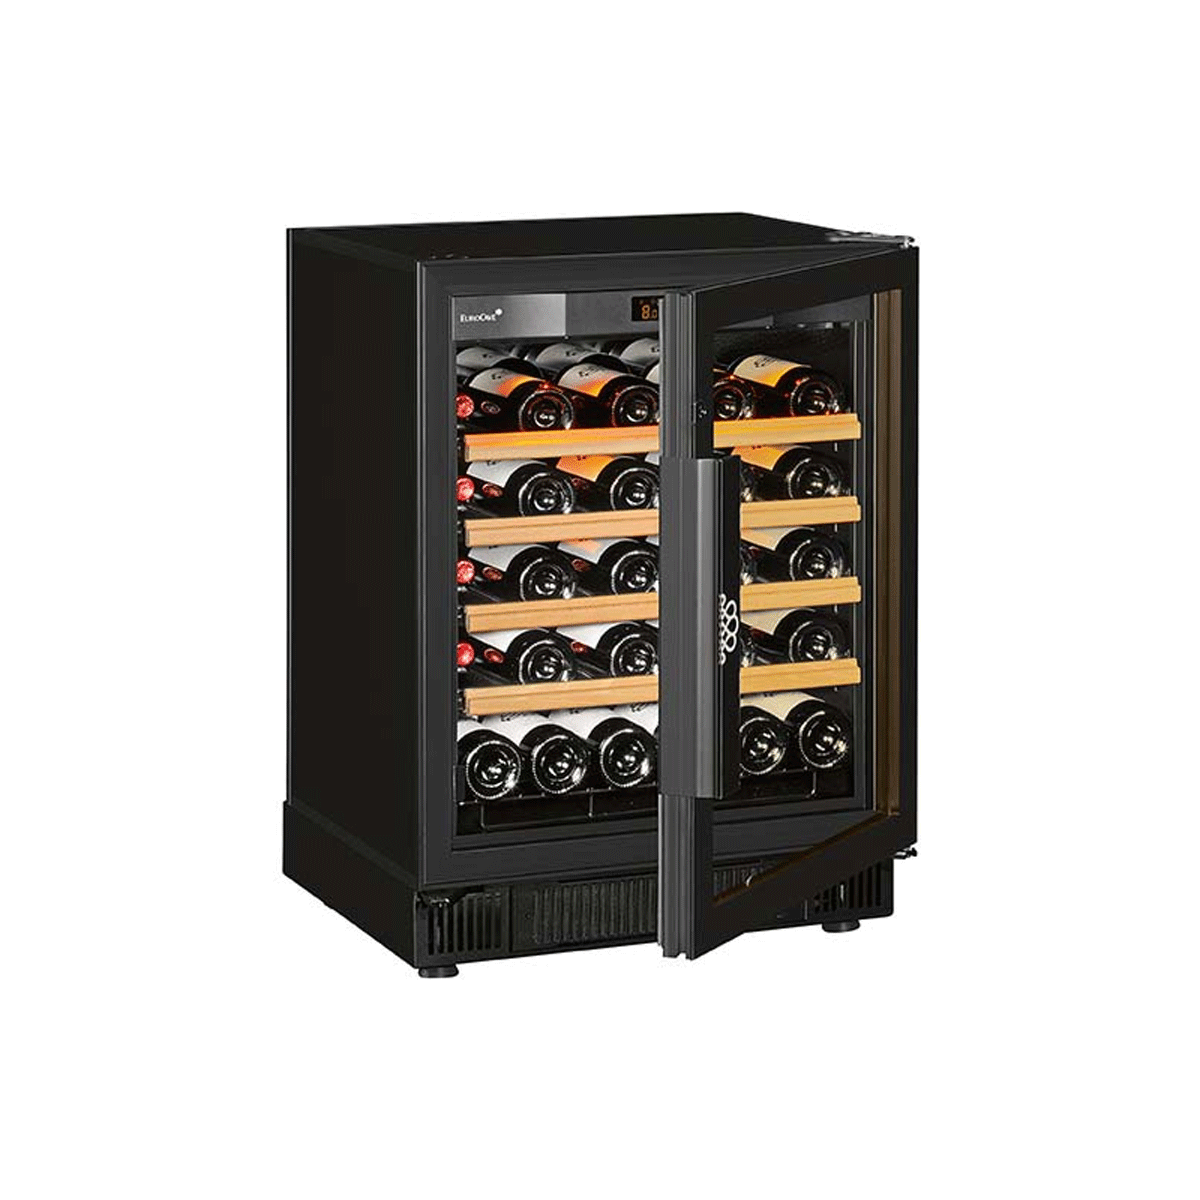 【Eurocave】S-059V3 Serving multi-temperature wine cabinet Compact, Small model